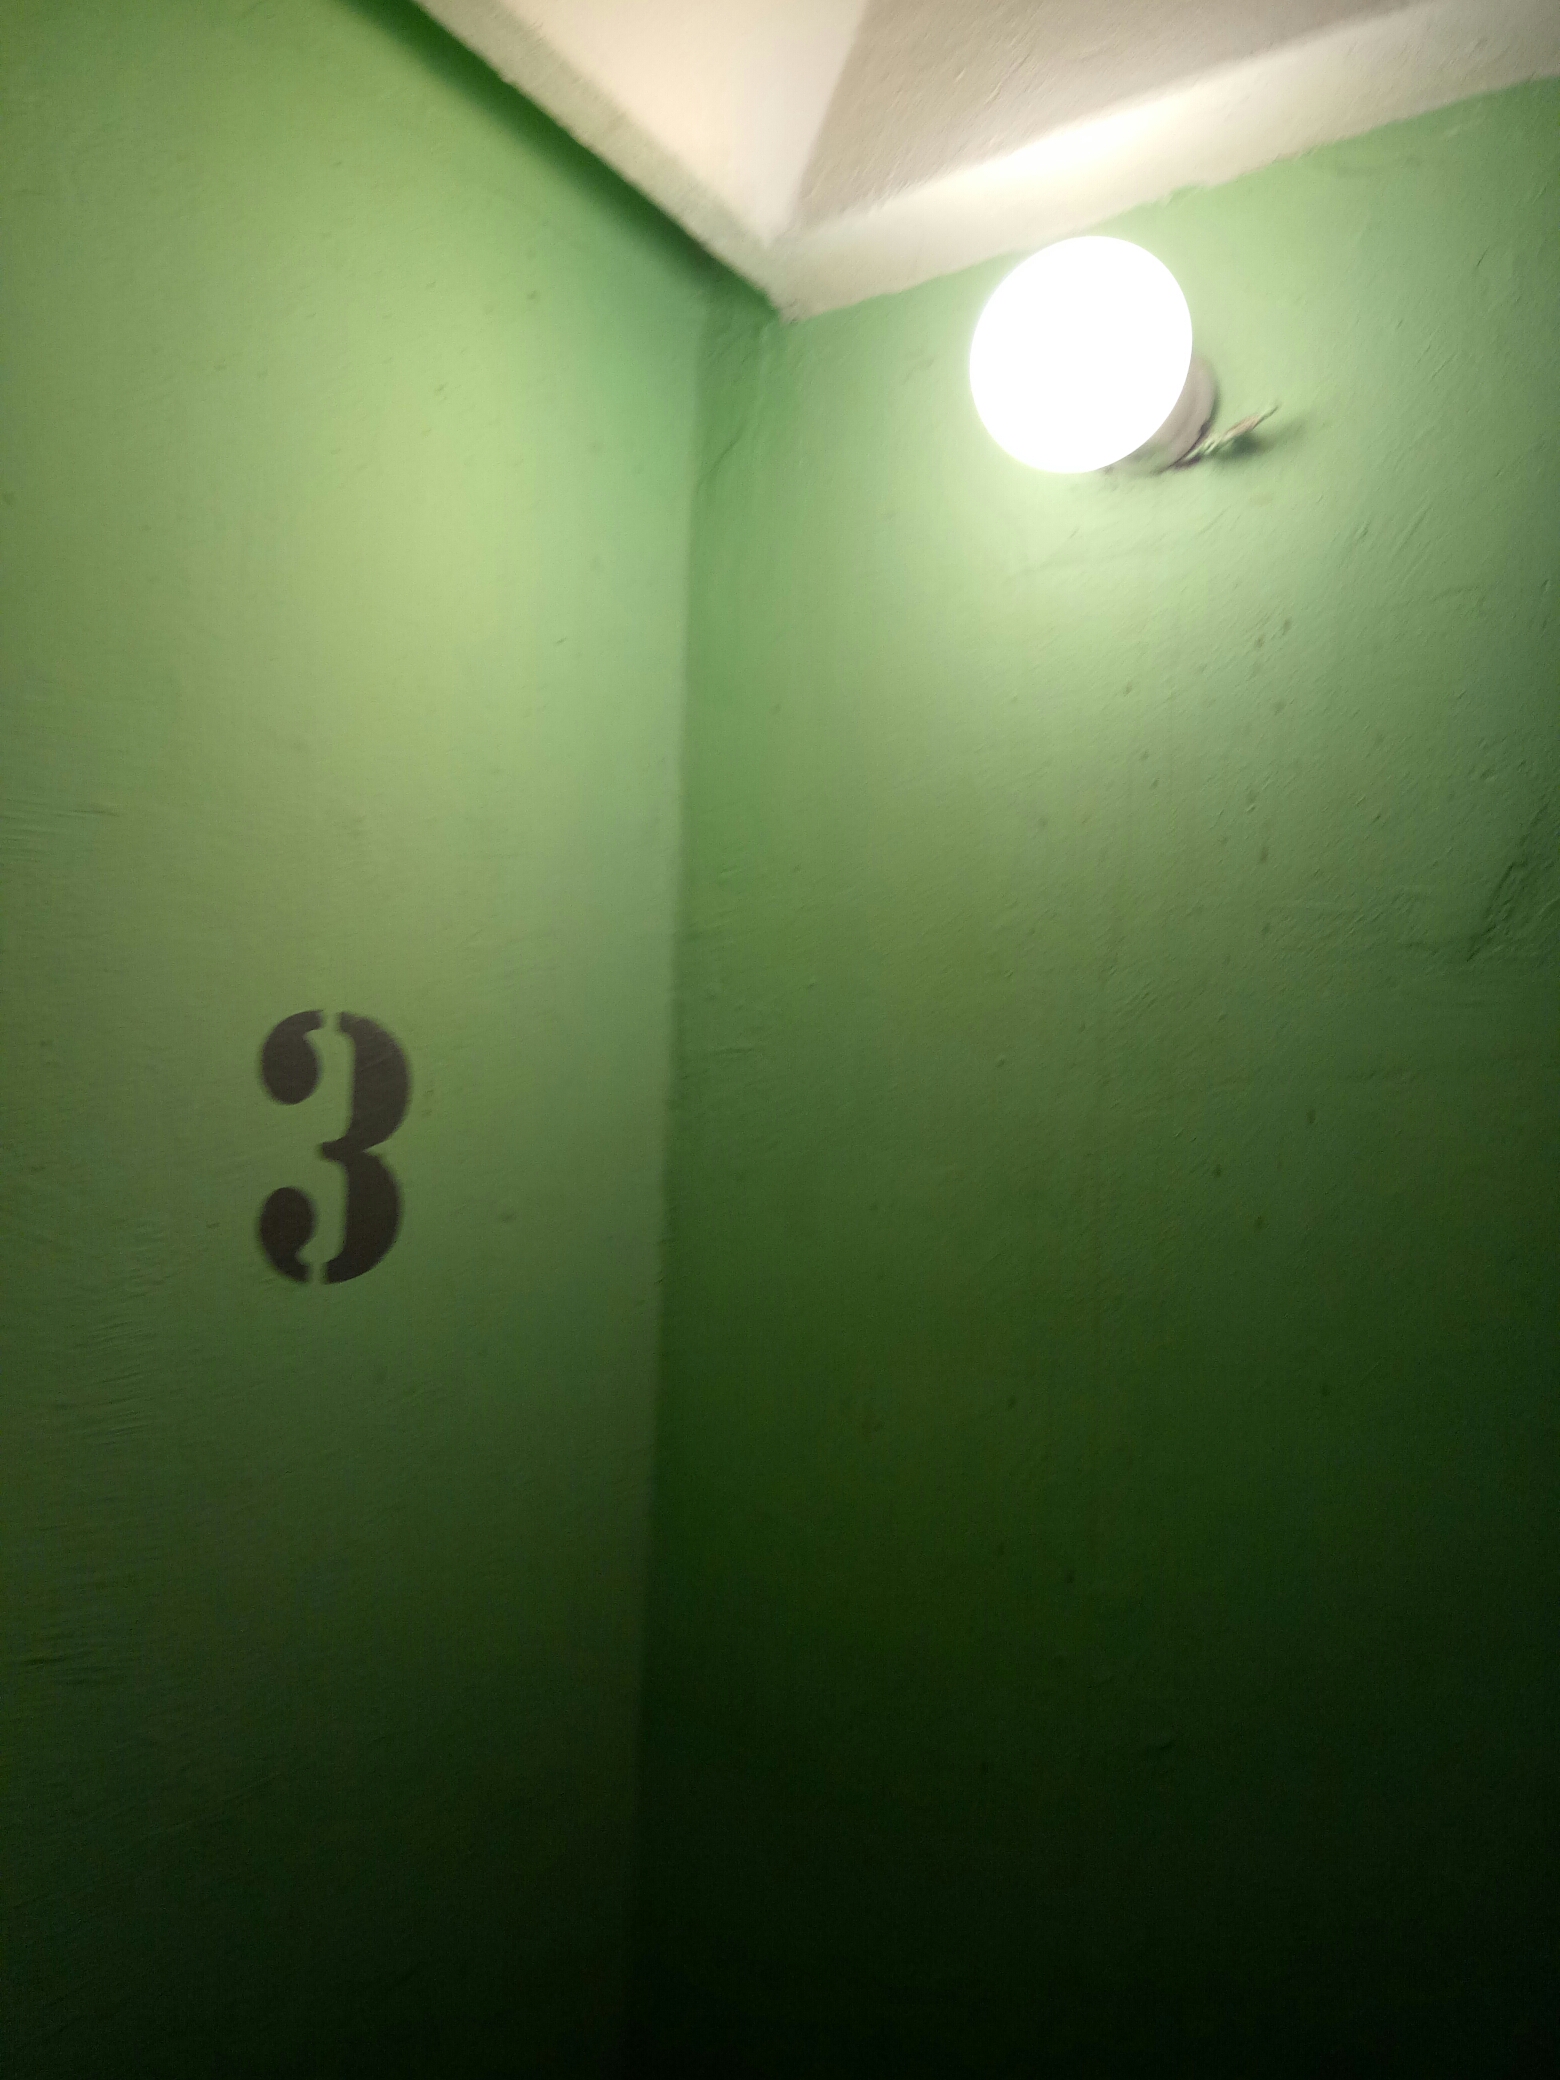 Установка светильников Учебный переулок д. 6 к. 1